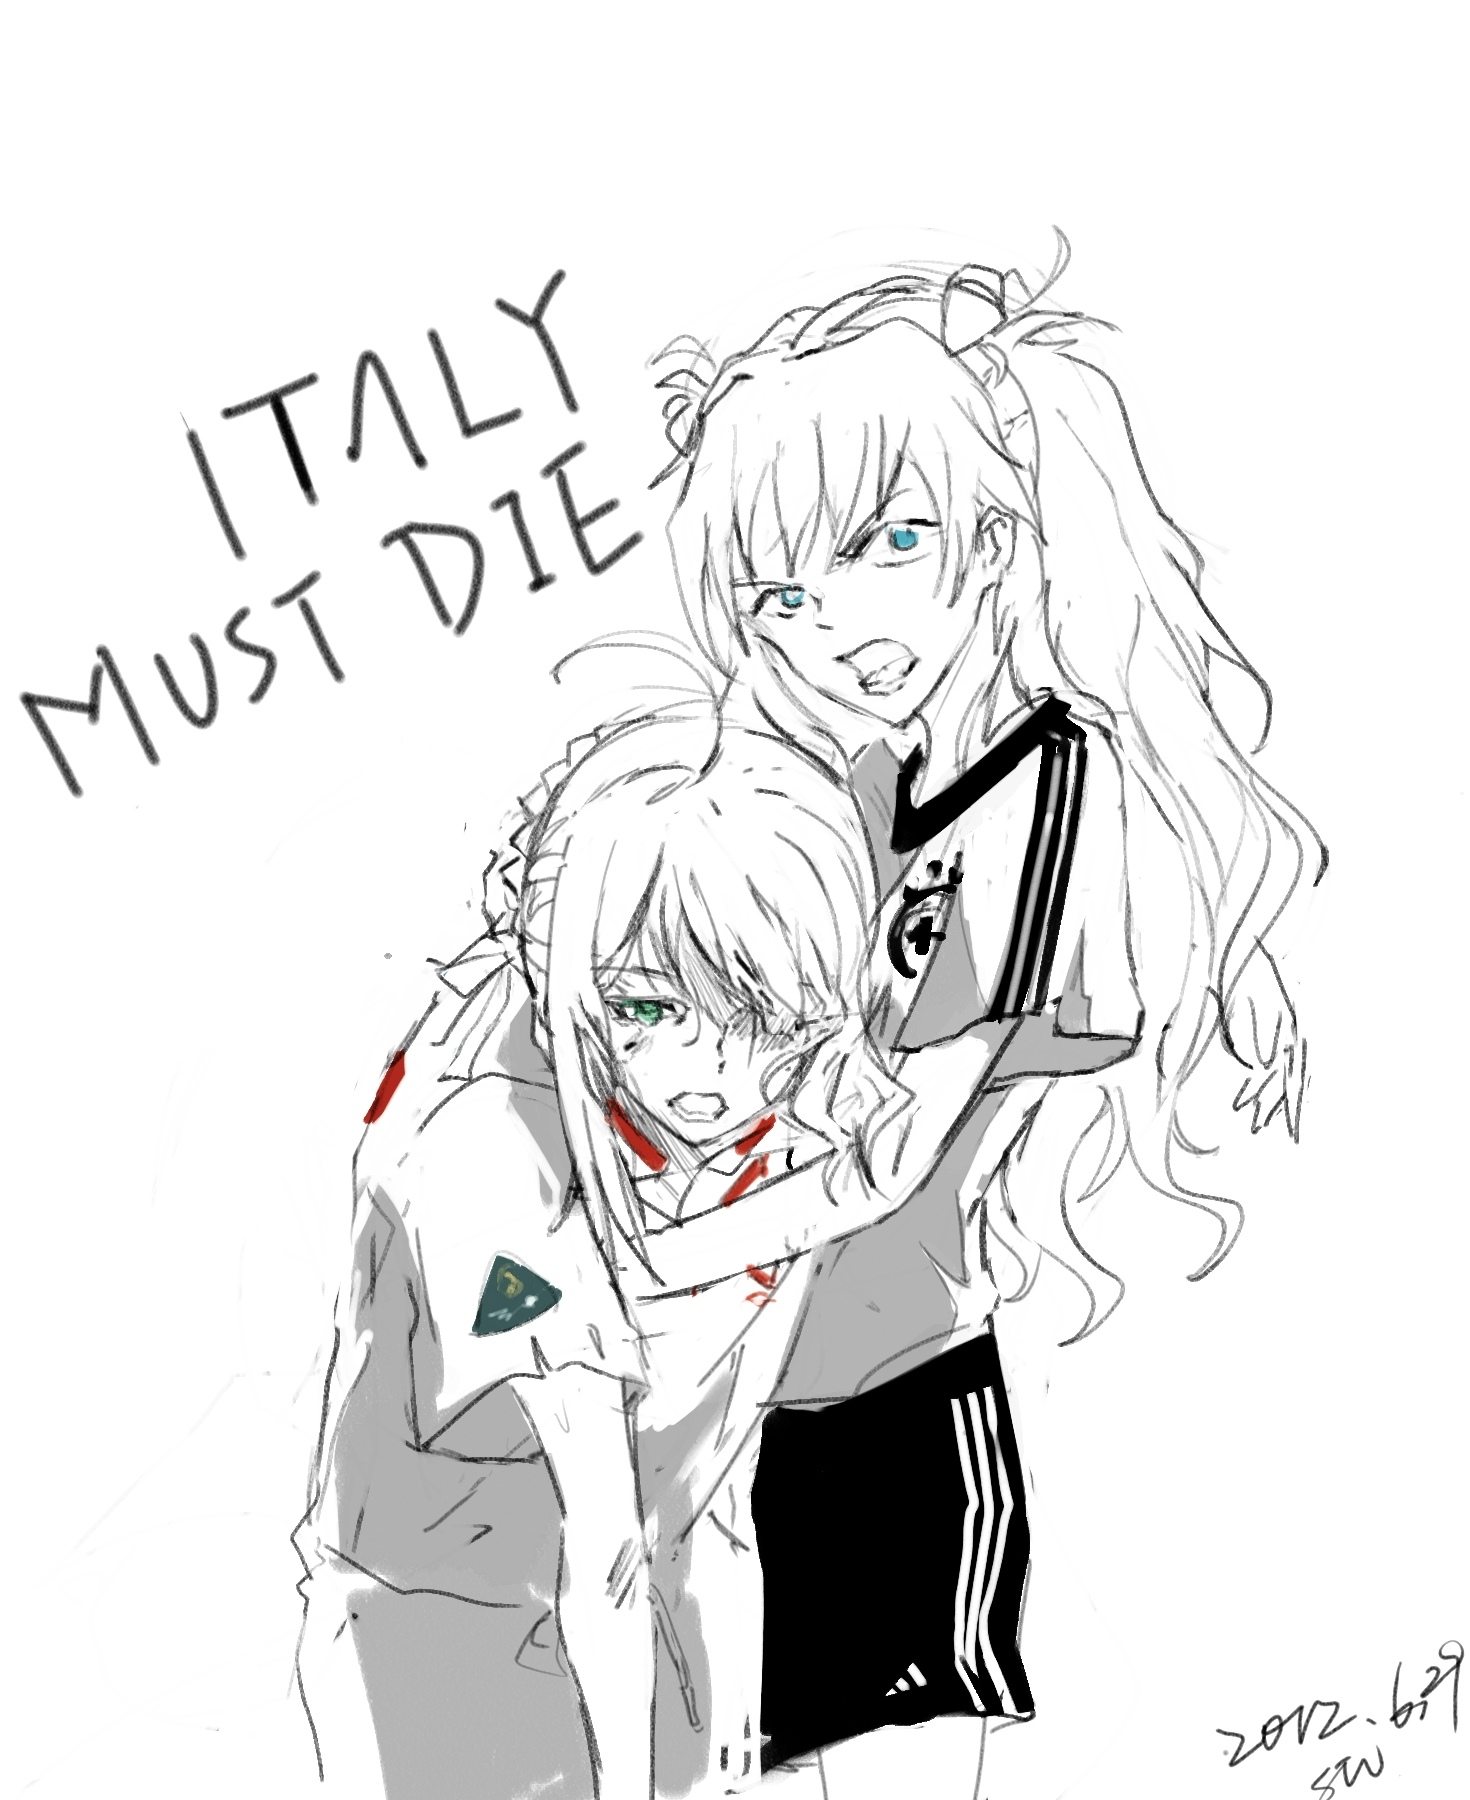 Italy must die